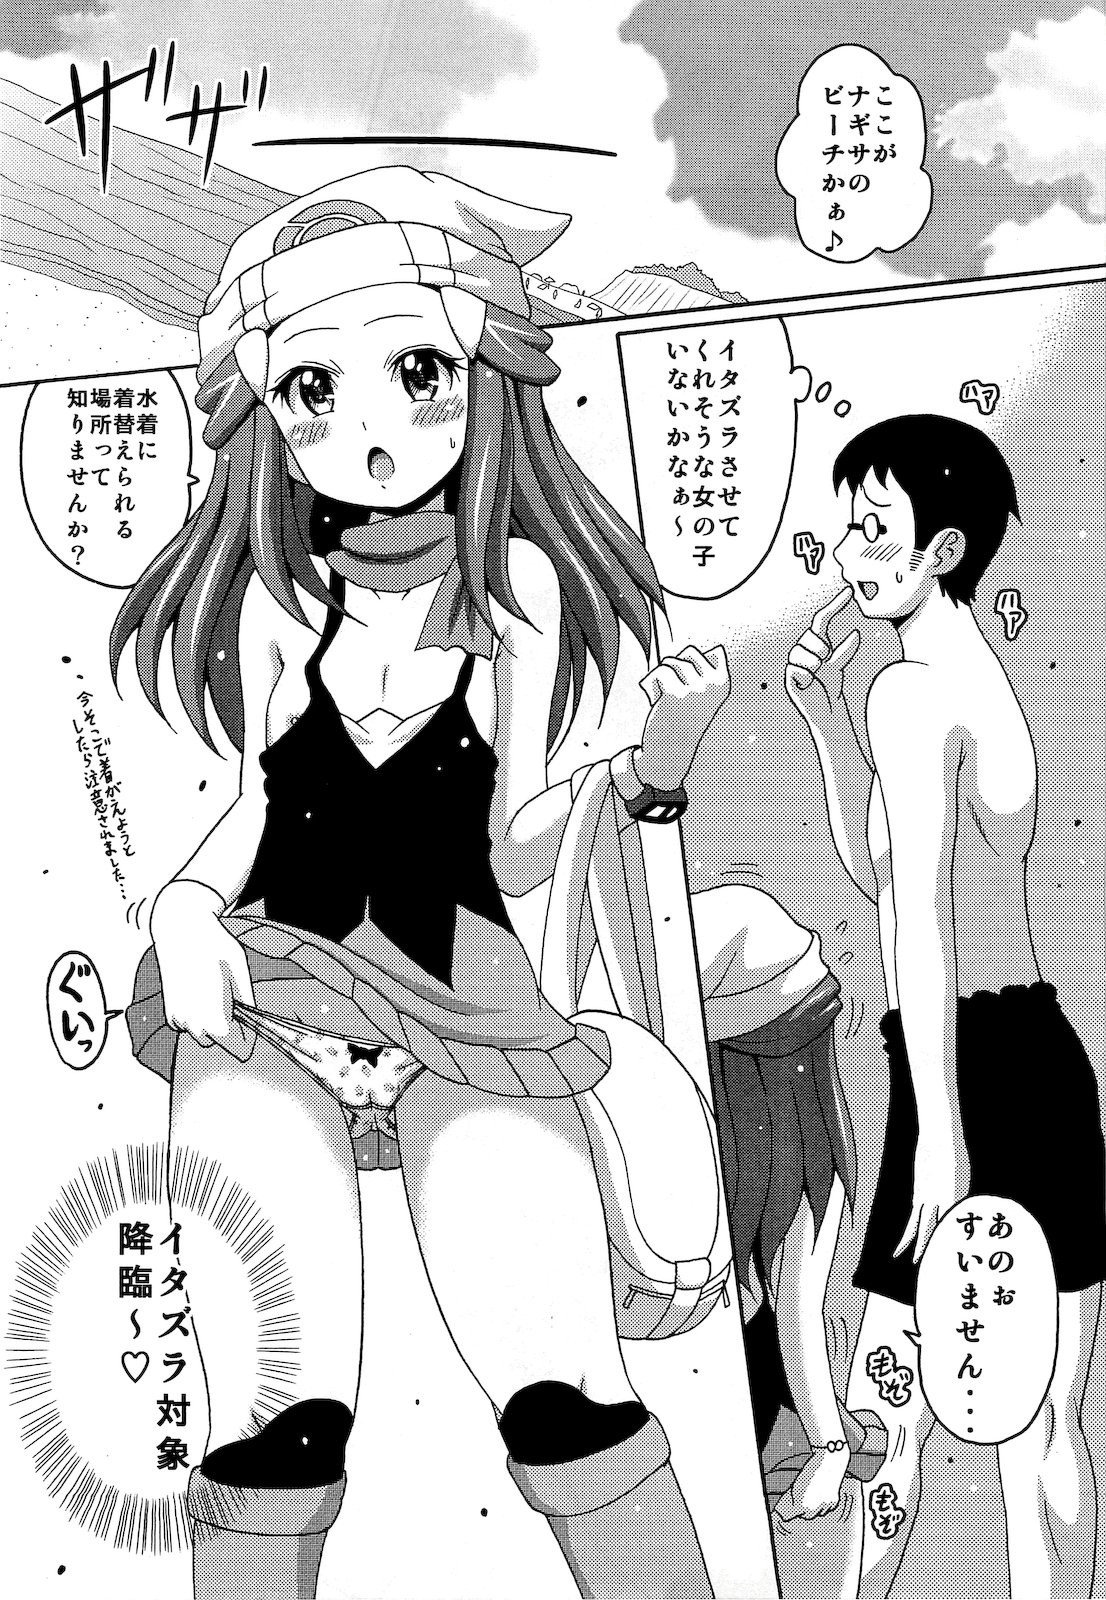 Hikarism hentai manga picture 3